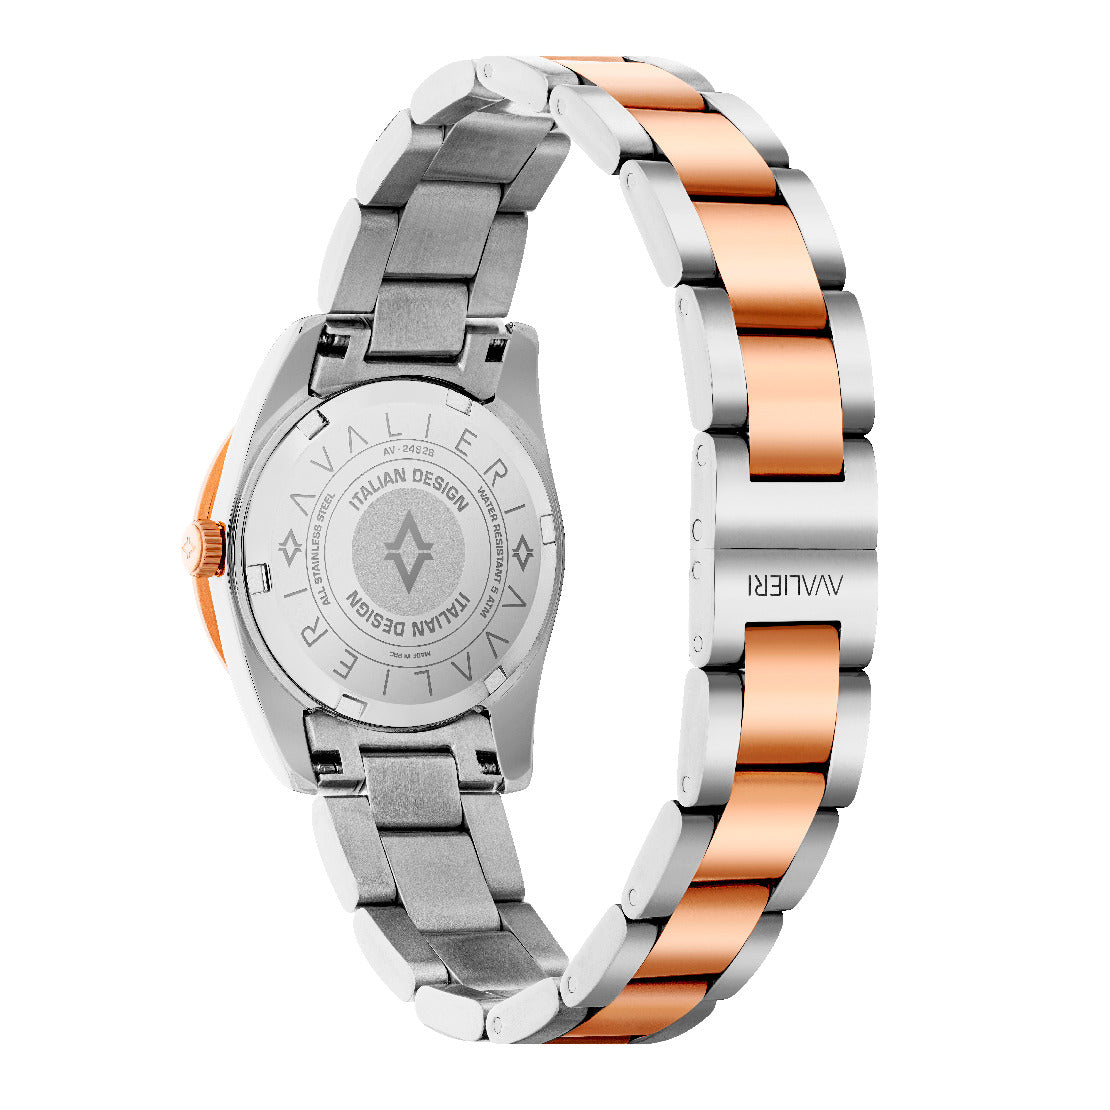 Avalieri Women's Quartz Watch Rose Gold Dial - AV-2482B